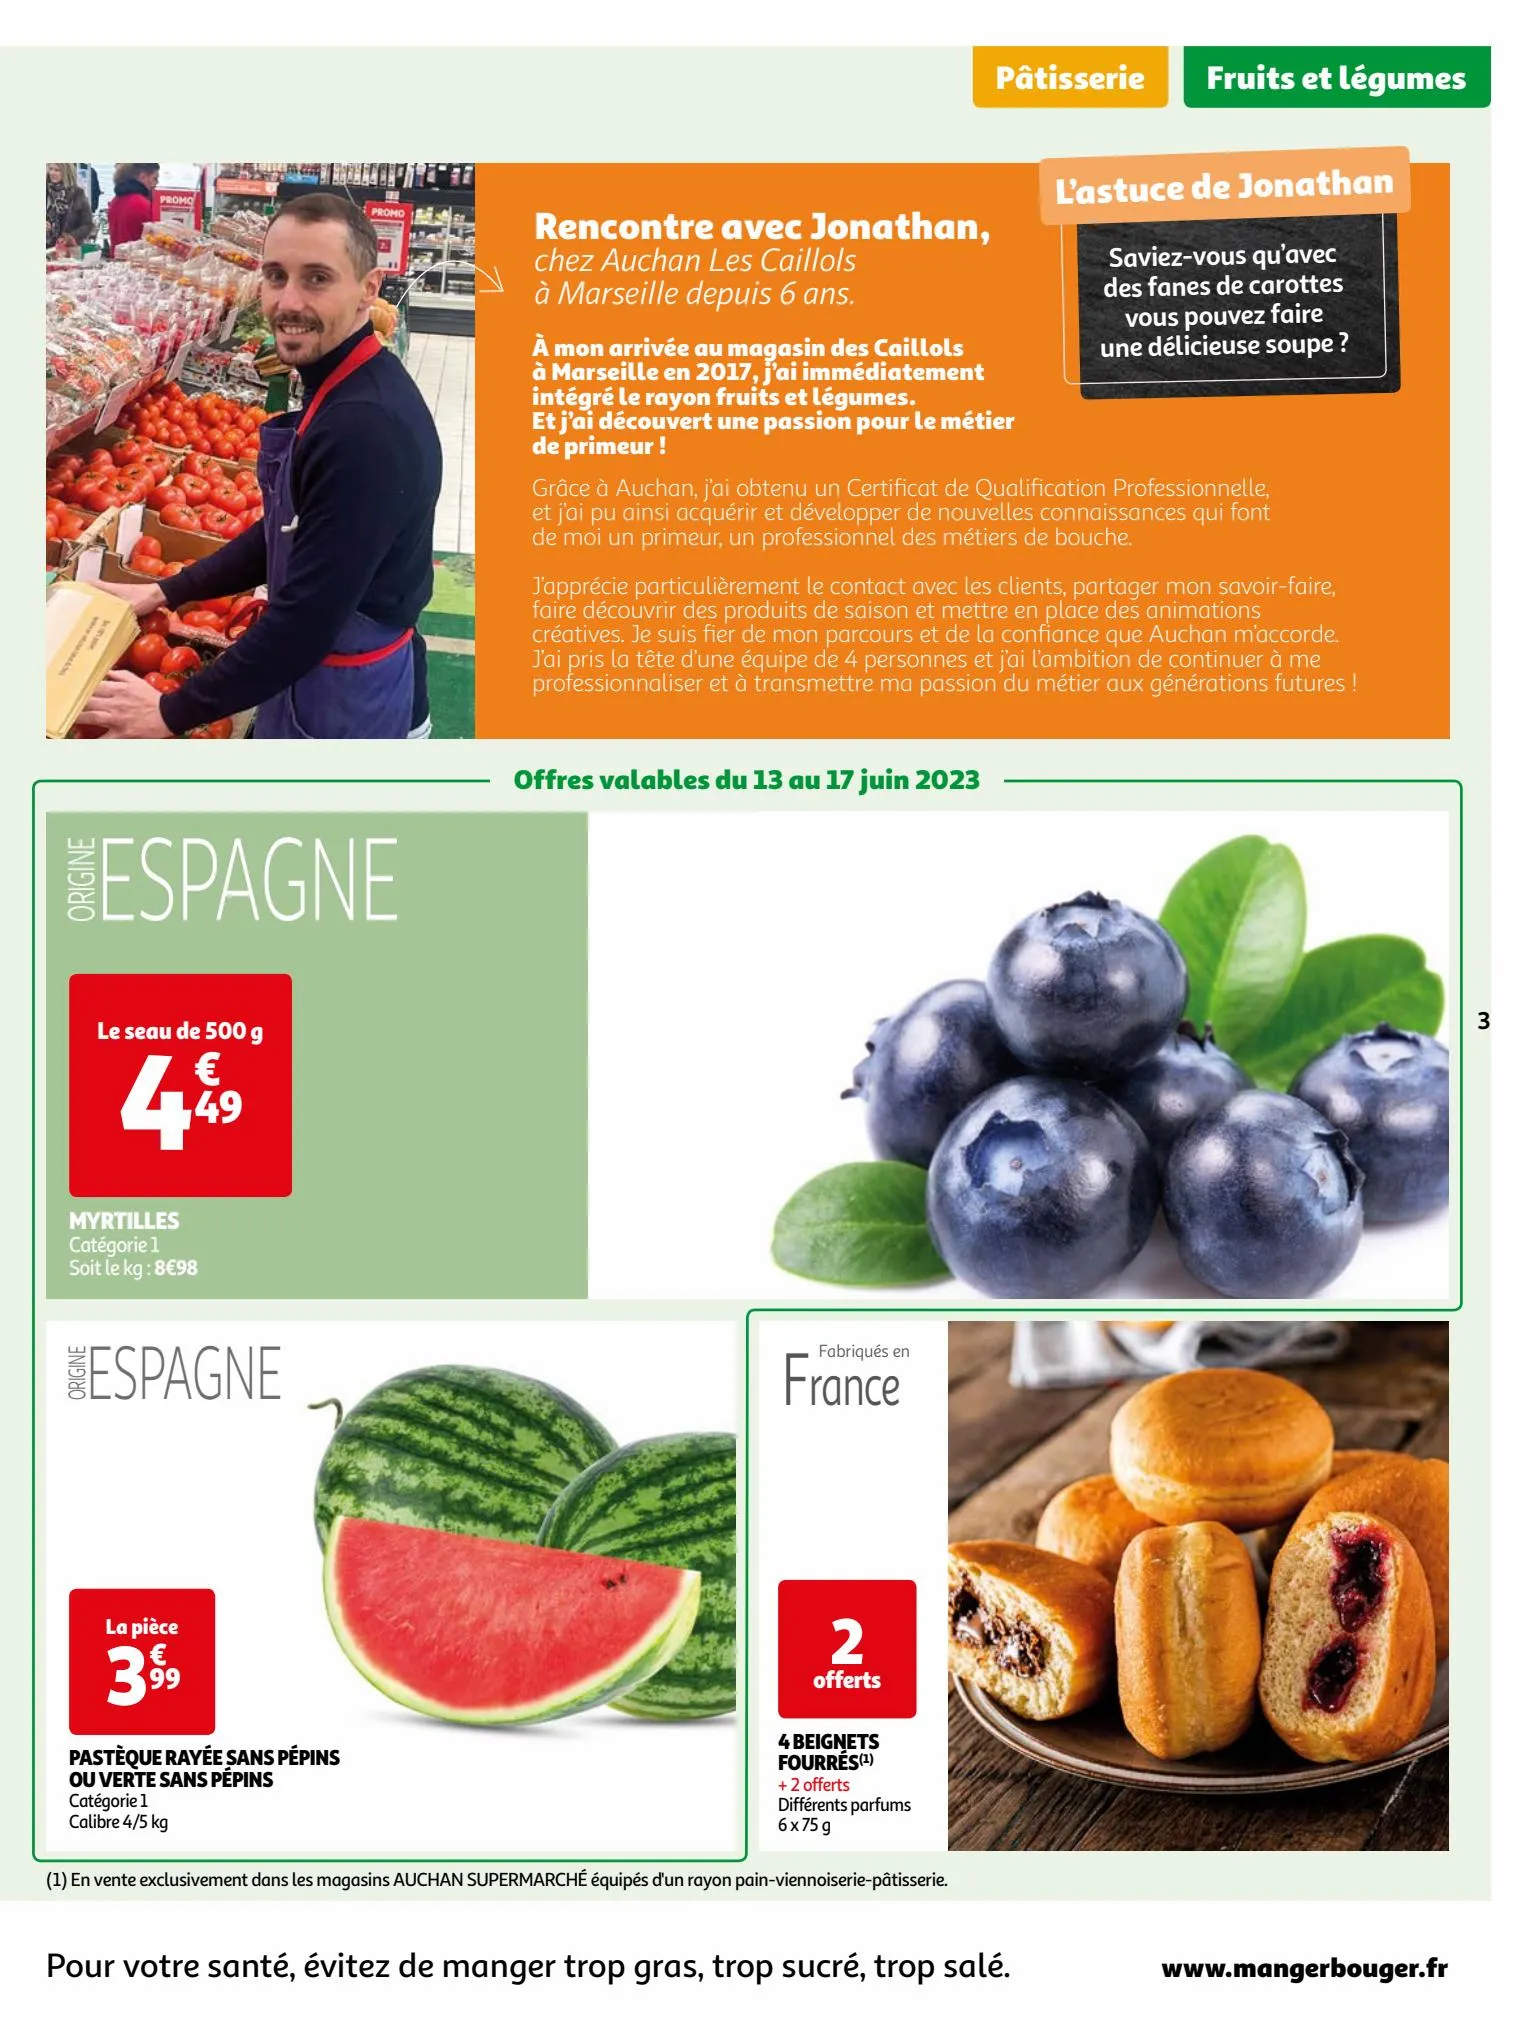 Catalogue Vos produits laitiers à petits prix !, page 00003